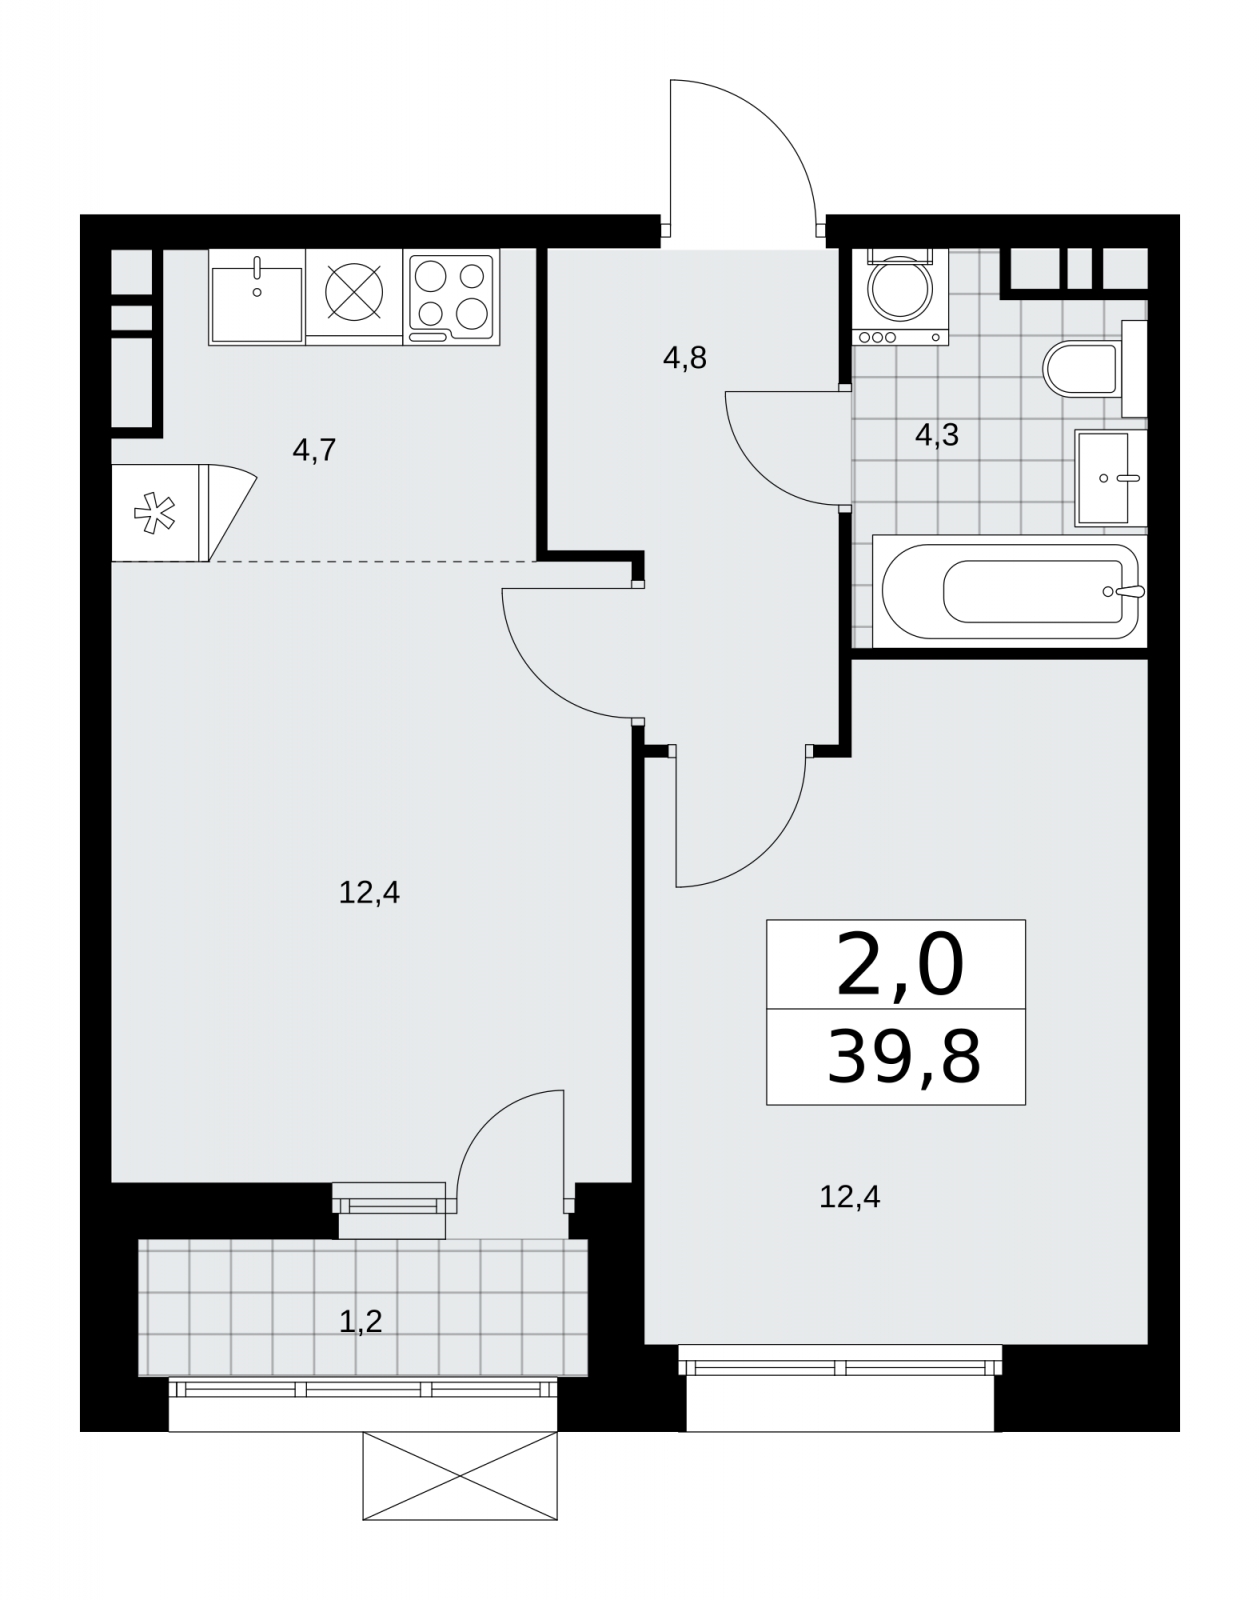 2-комнатная квартира с отделкой в ЖК мой адрес На Береговом на 28 этаже в 1 секции. Дом сдан.